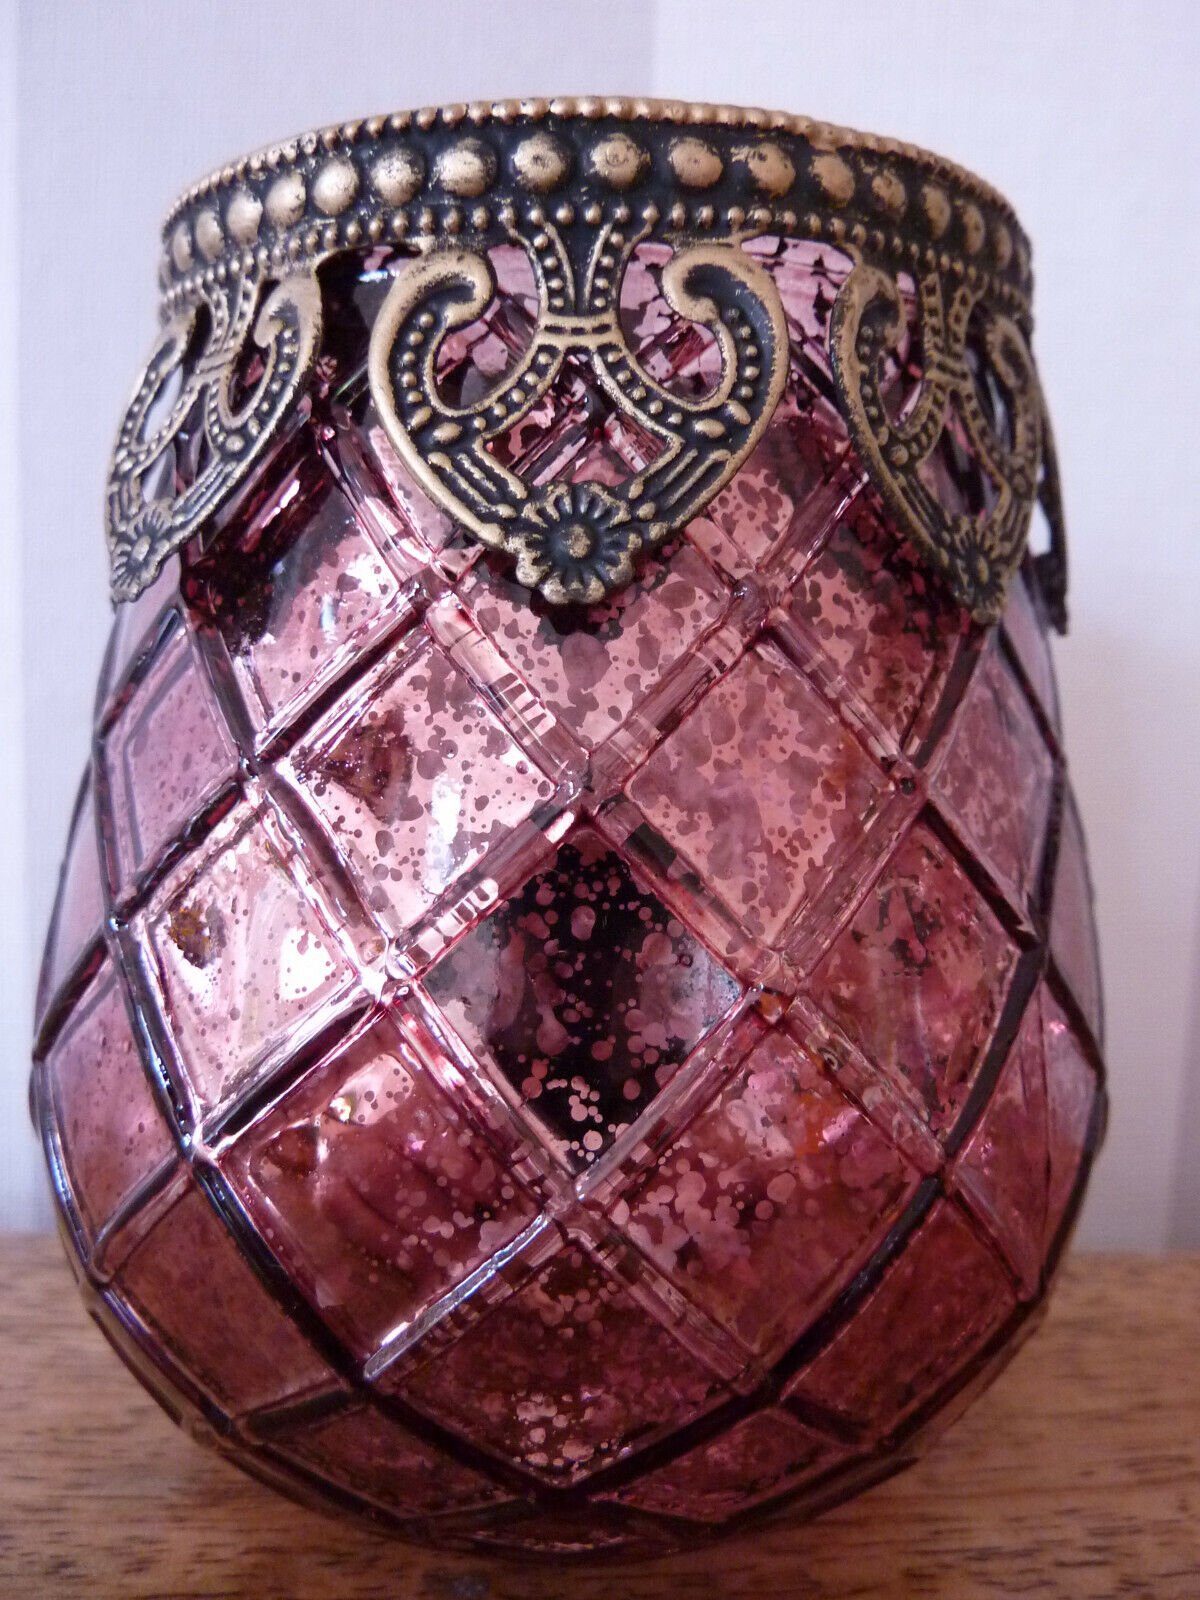 Taschen4life Windlicht Glas 602 Set), Stück) chic Shabby Stück Stil rot (3er & (3 Bohemien 3 Windlichte, Windlicht Teelichthalter, orientalische Indien